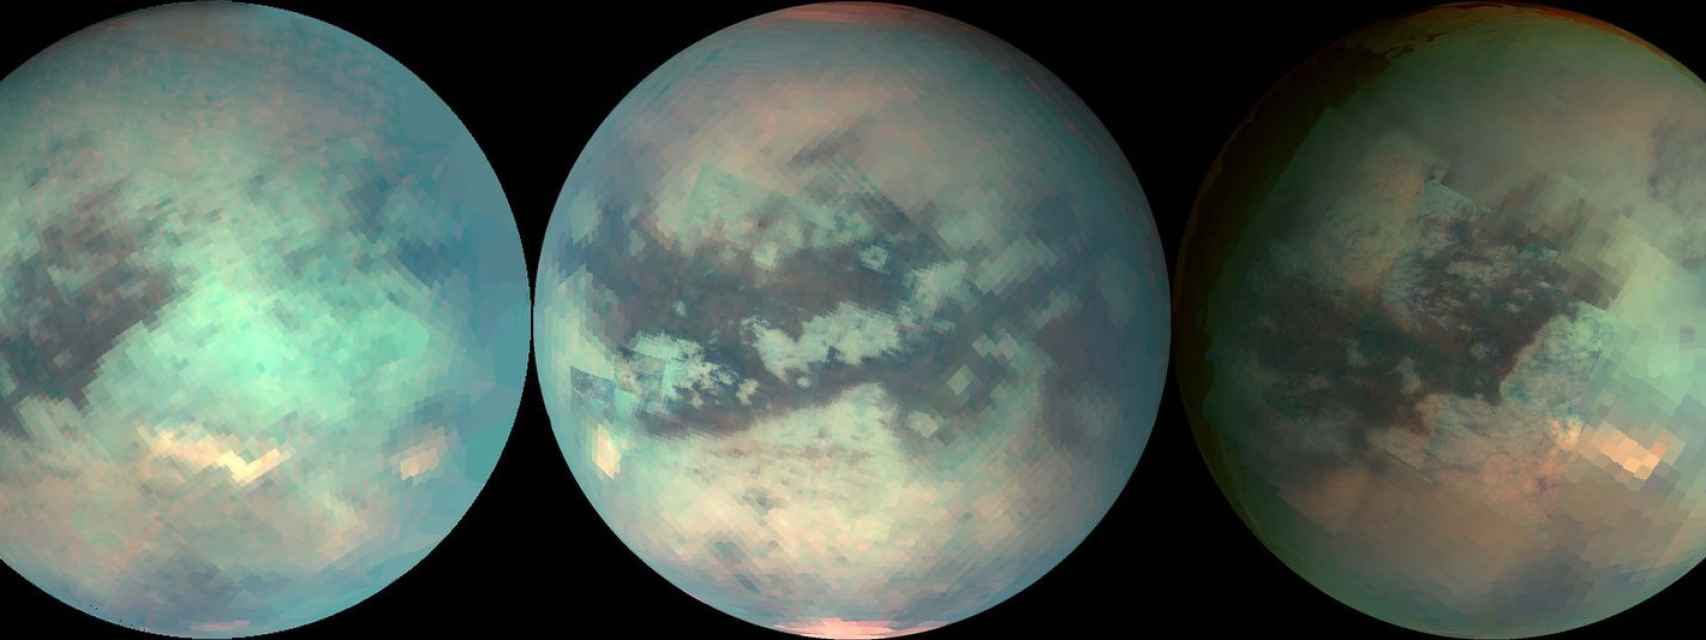 La sonda espacial de la NASA Cassini utilizó luz infrarroja para mirar a través de la atmósfera nebulosa de Titán y tomar medidas aproximadas de su superficie.